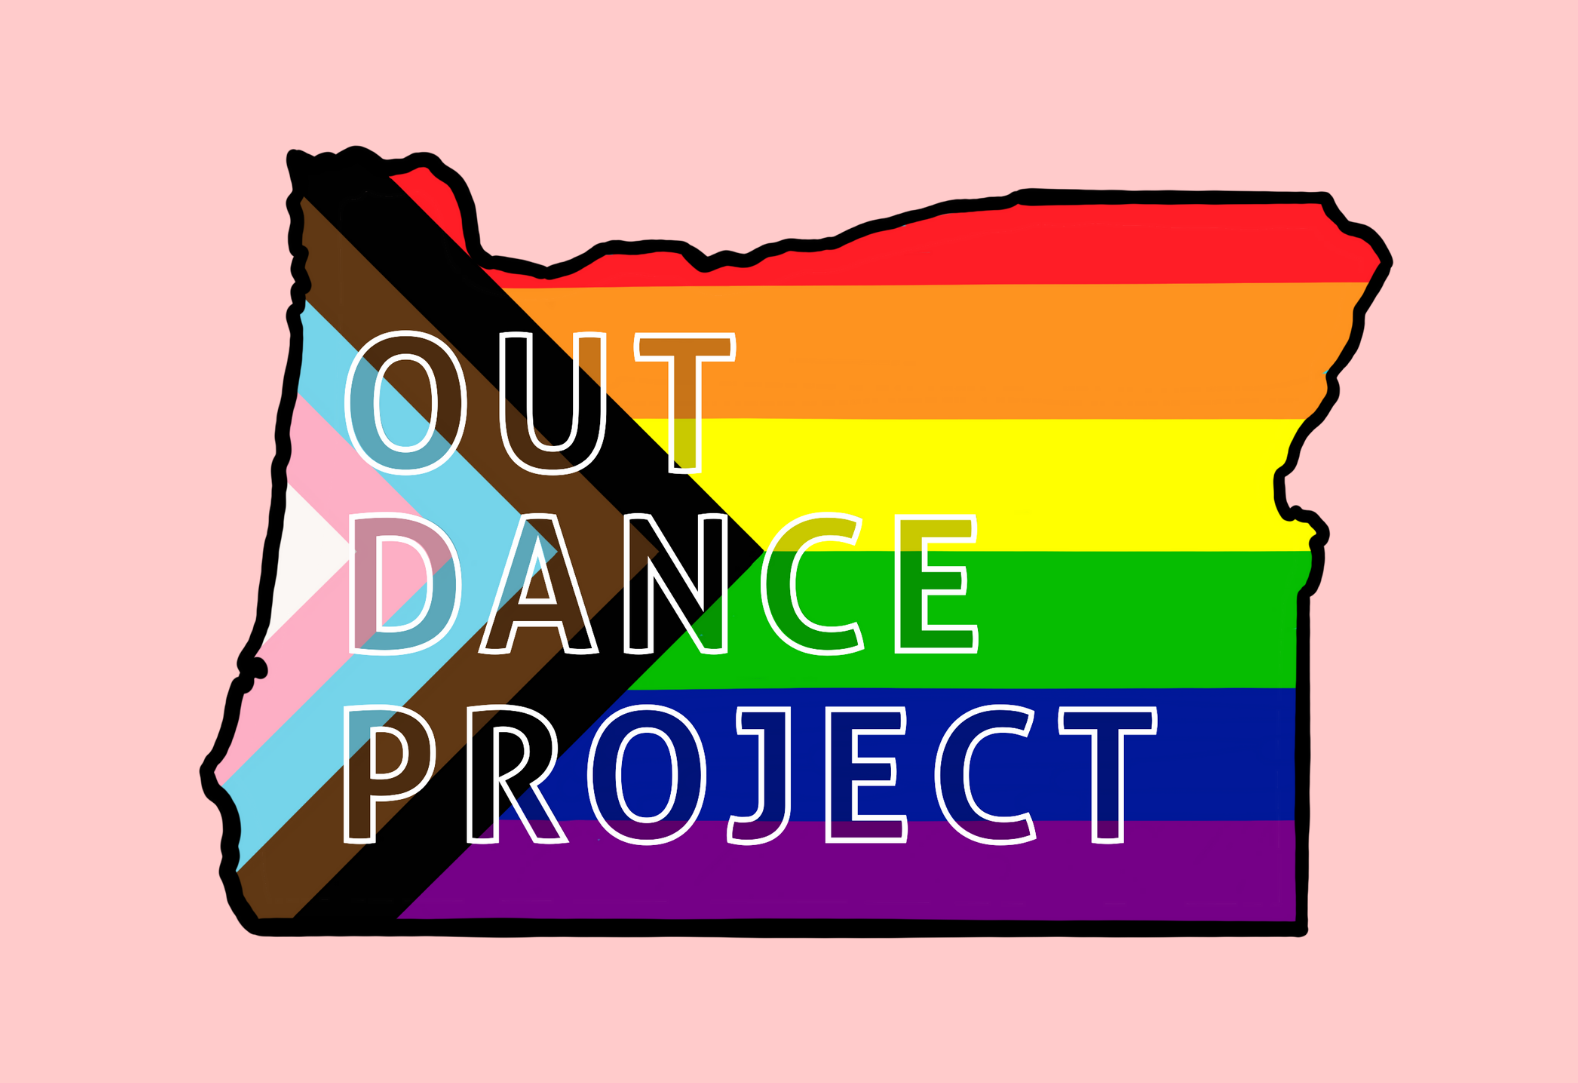 OUTDance 项目标志俄勒冈州的形状，带有骄傲的旗帜颜色